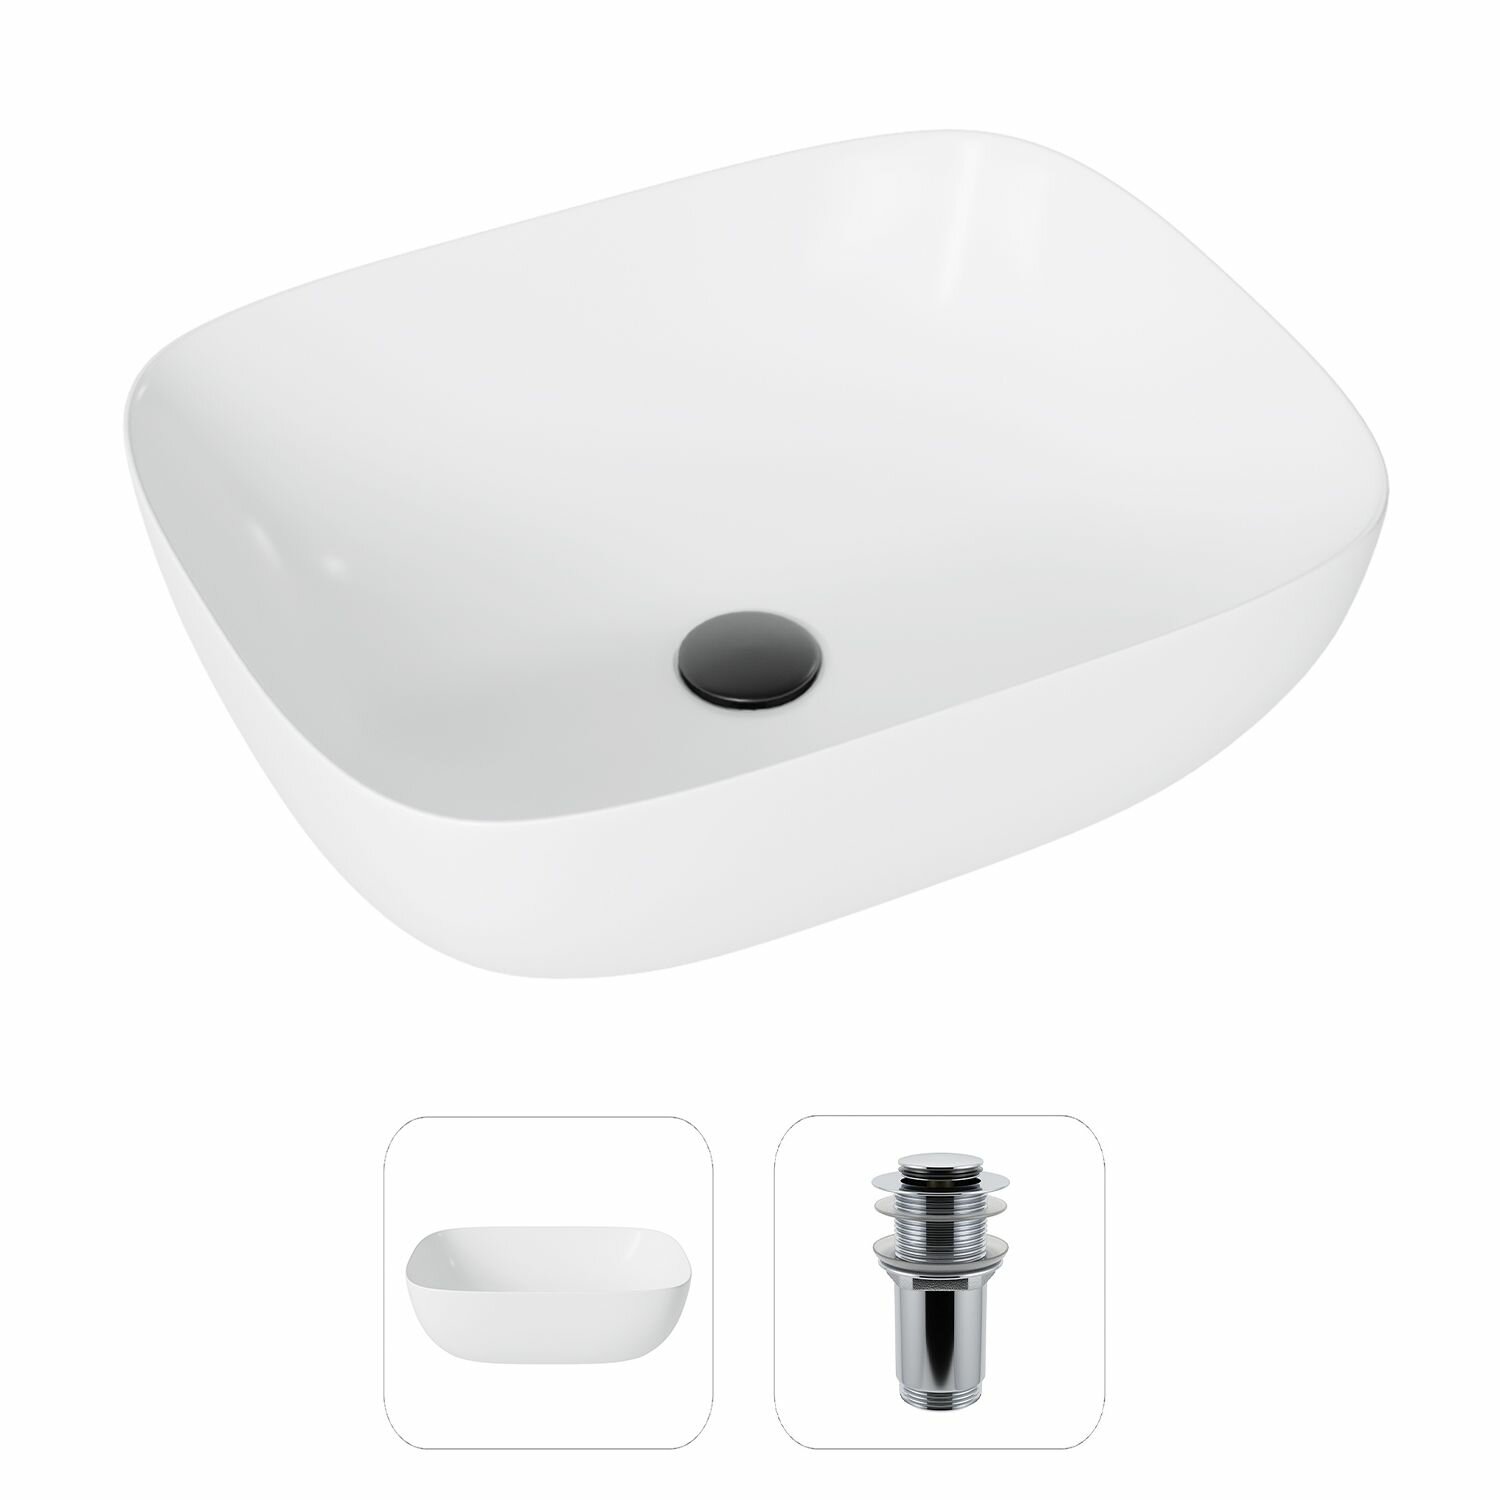 Накладная раковина в ванную Helmken 49349001 комплект 3 в 1: умывальник прямоугольный 495 см сифон и донный клапан click-clack в цвете черный